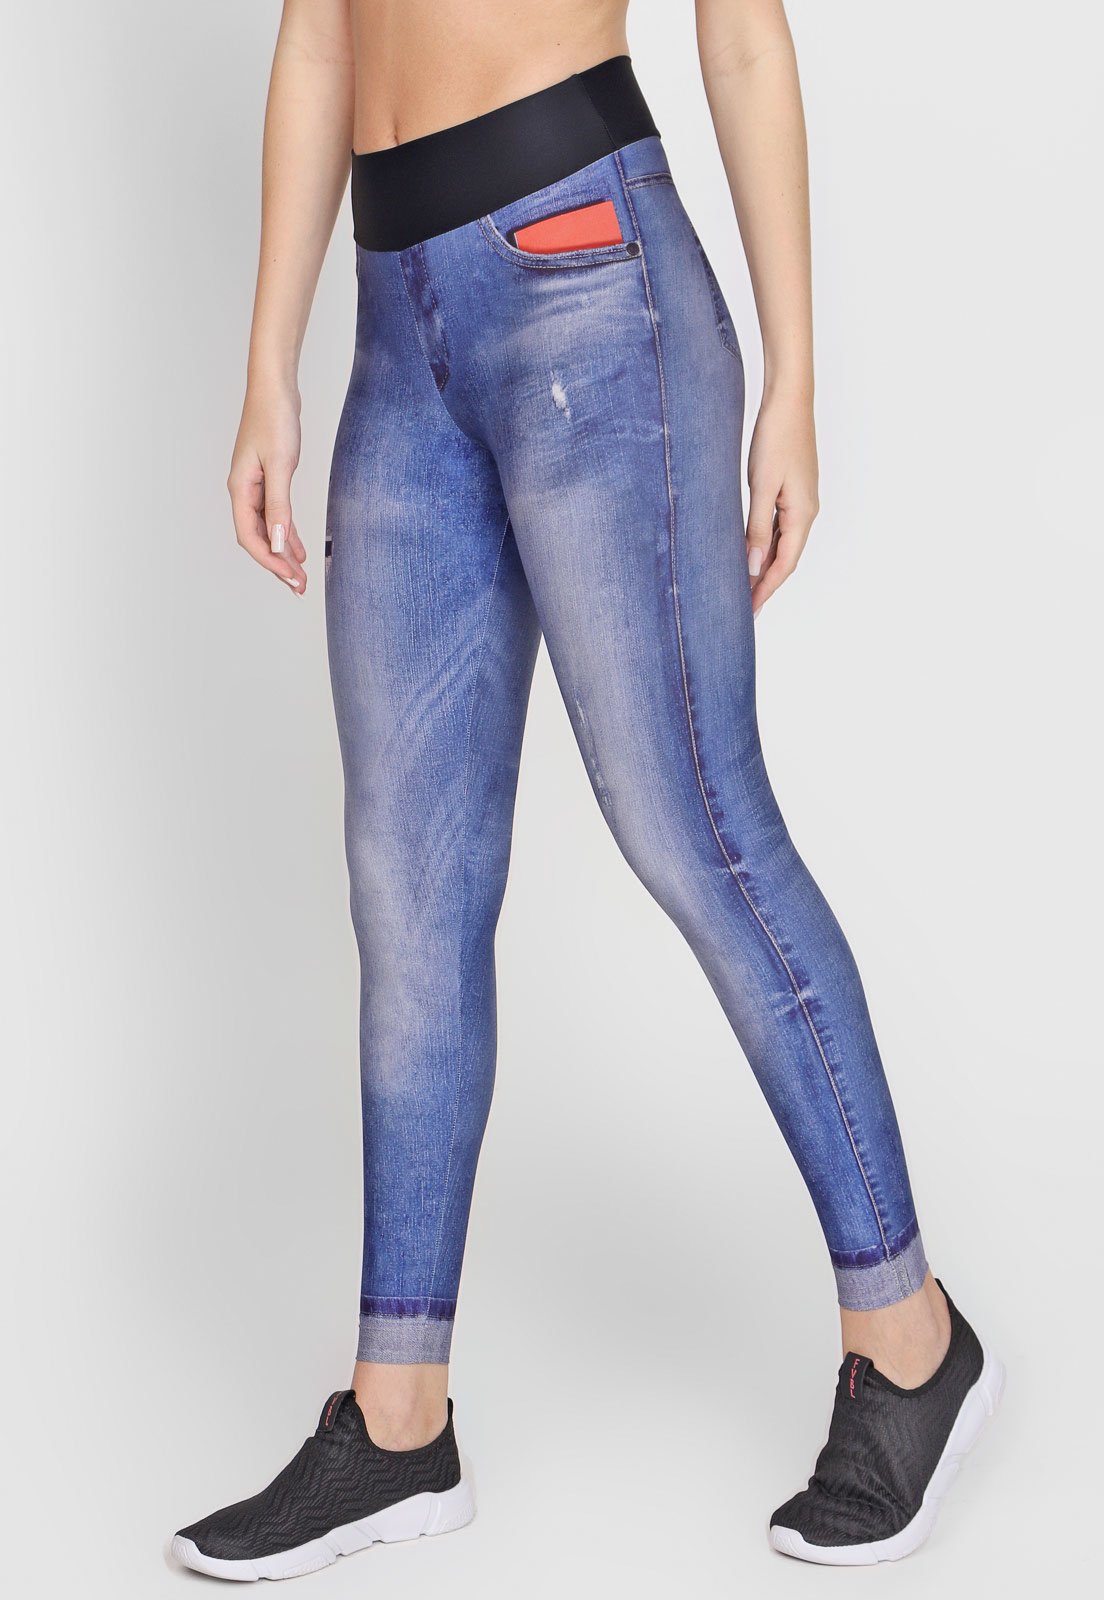 Legging Live! Jeans Original Azul - Compre Agora